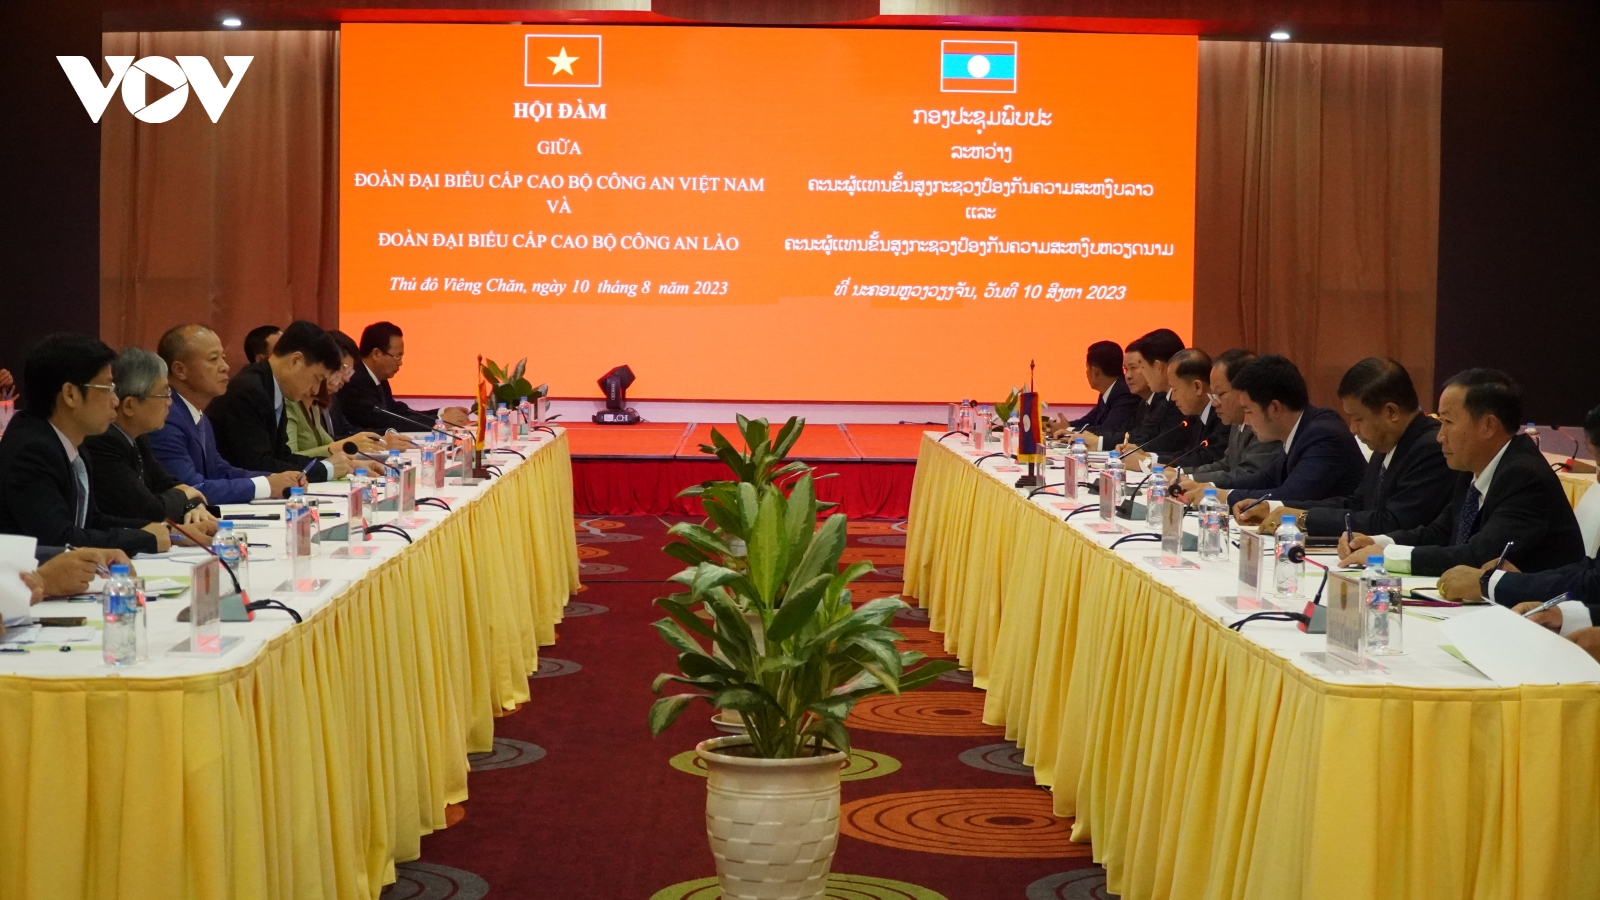 Bộ Công an Việt Nam tăng cường hợp tác với Bộ Công an Lào